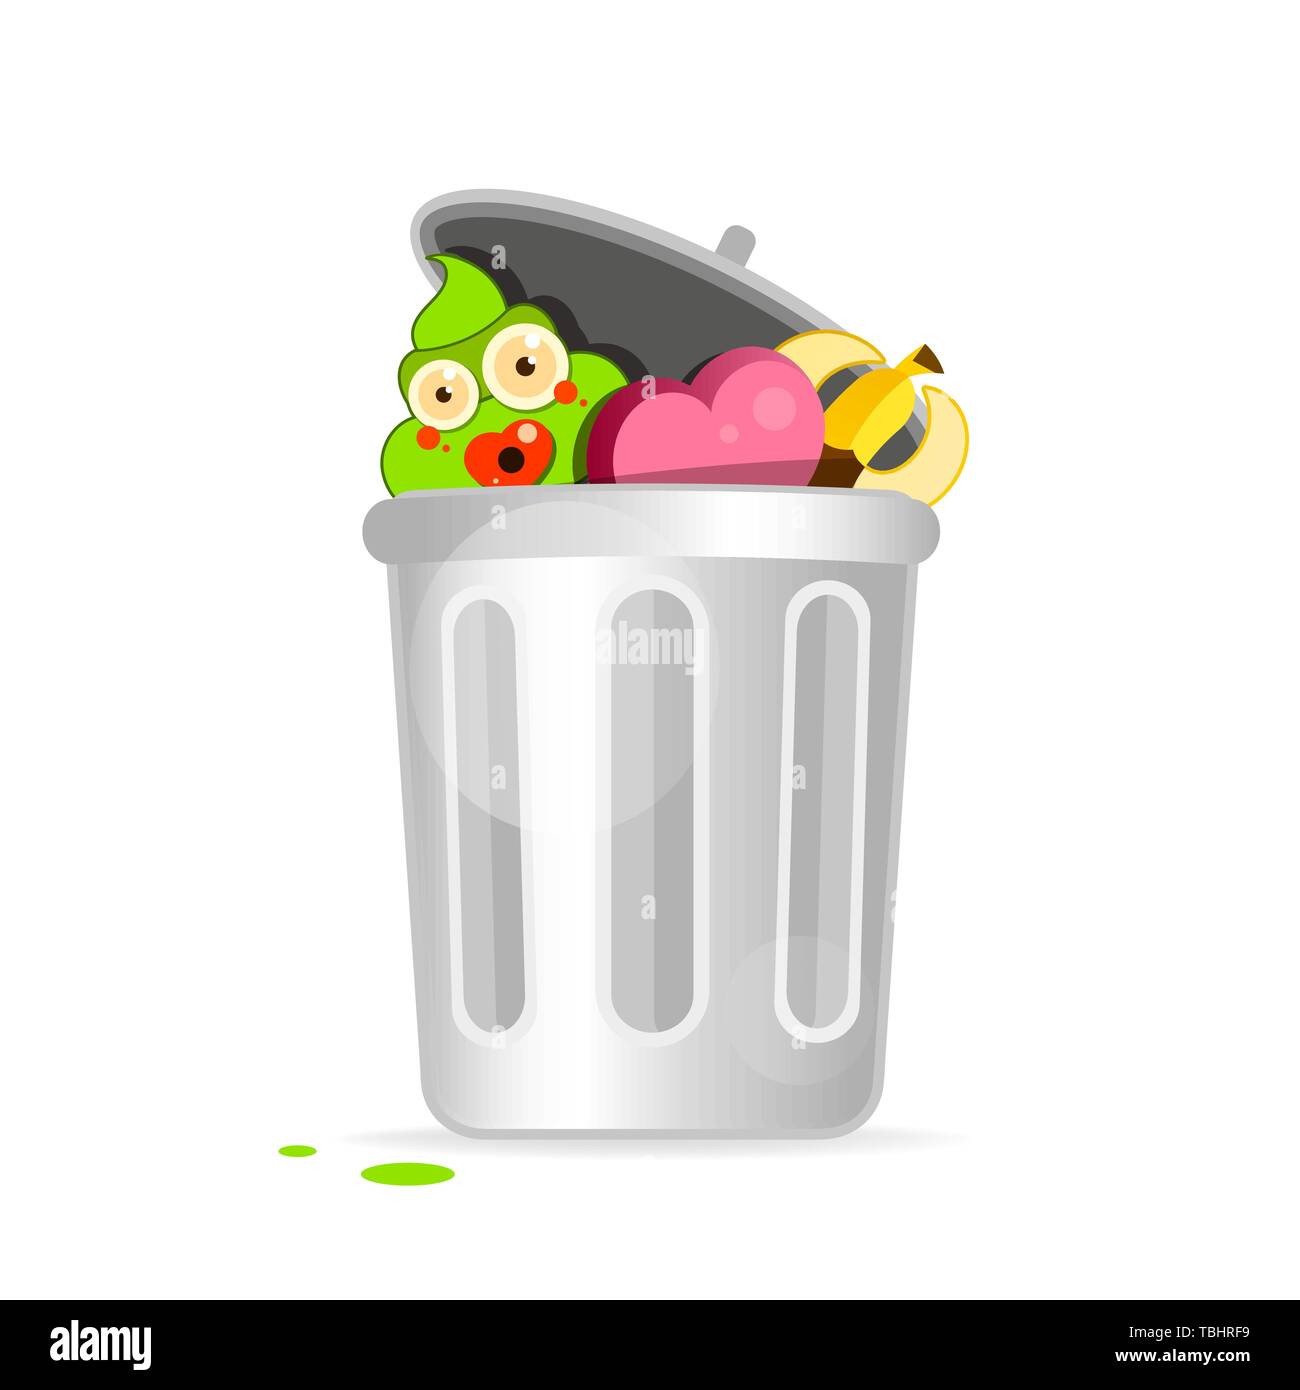 waste basket cartoon